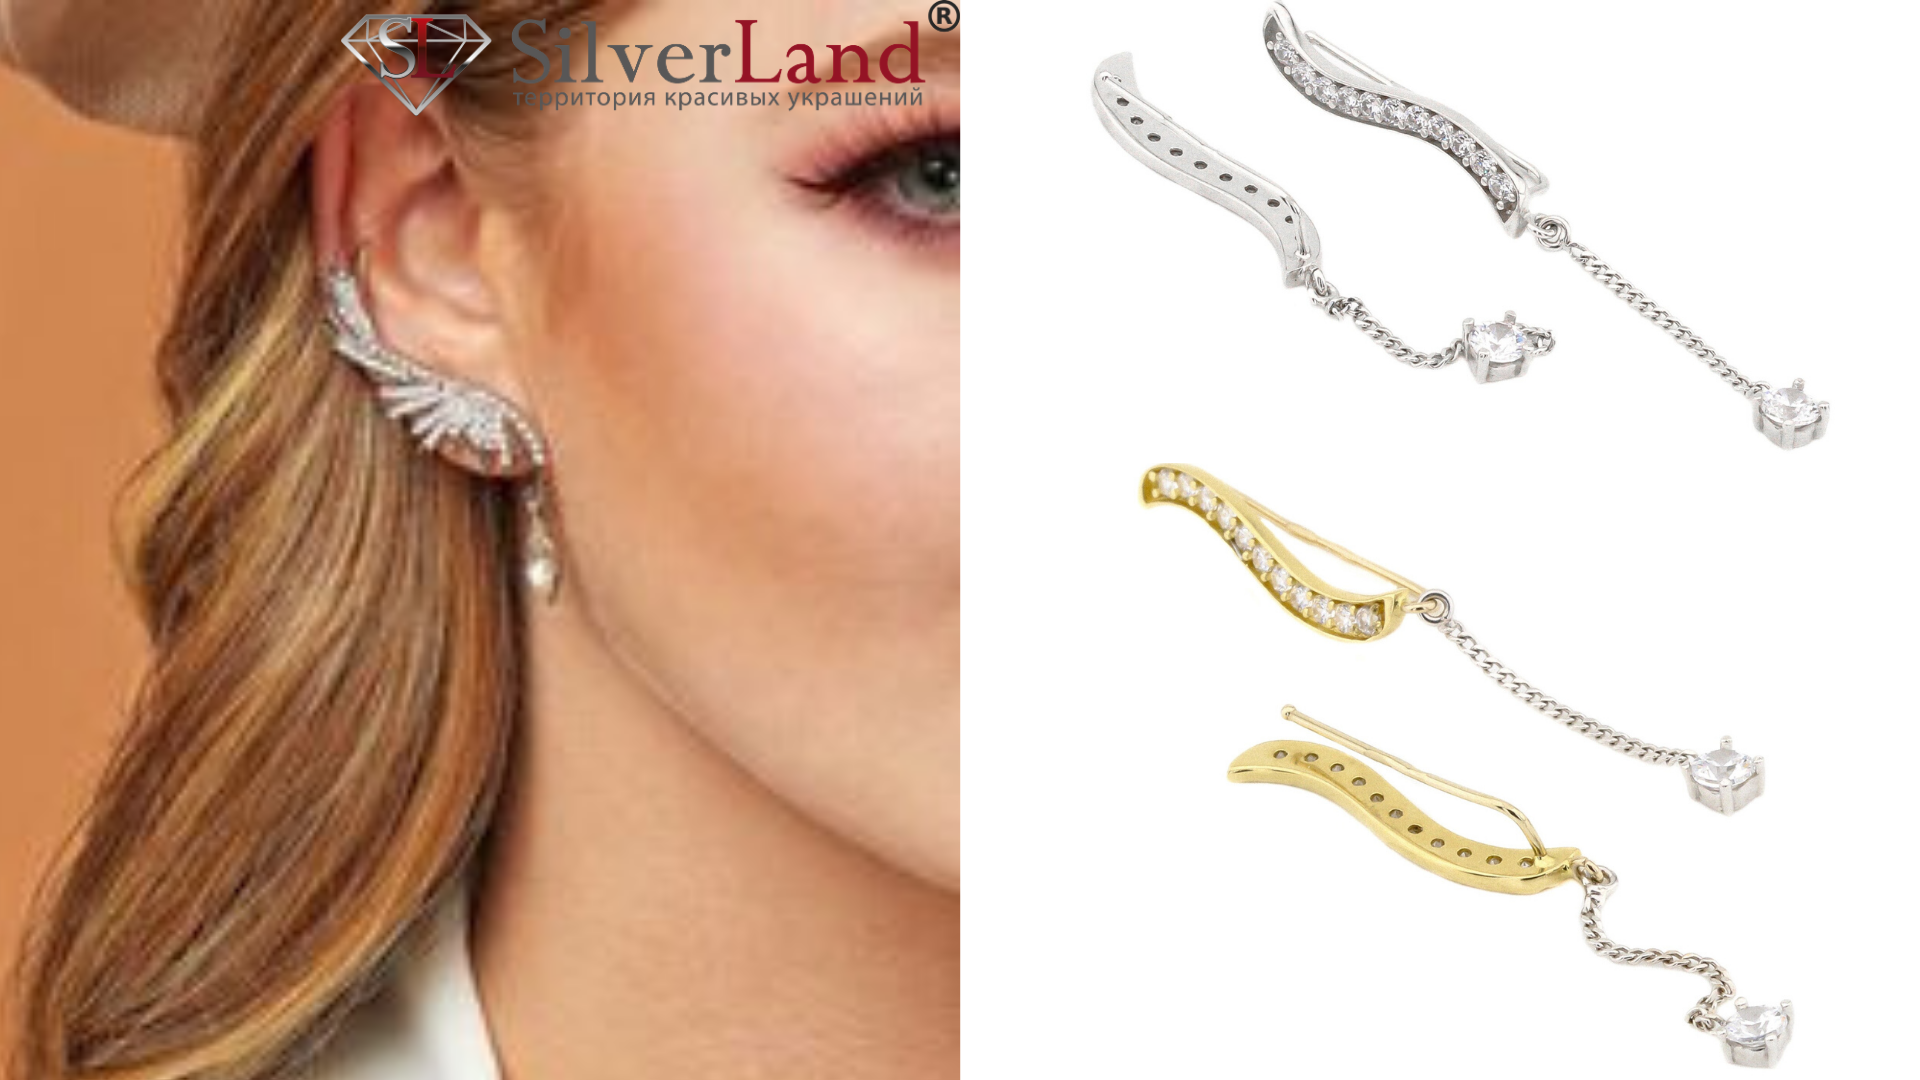 картинка сережки ыз золота на вусі дівчини в каталозі інтернет магазину Сільверленд